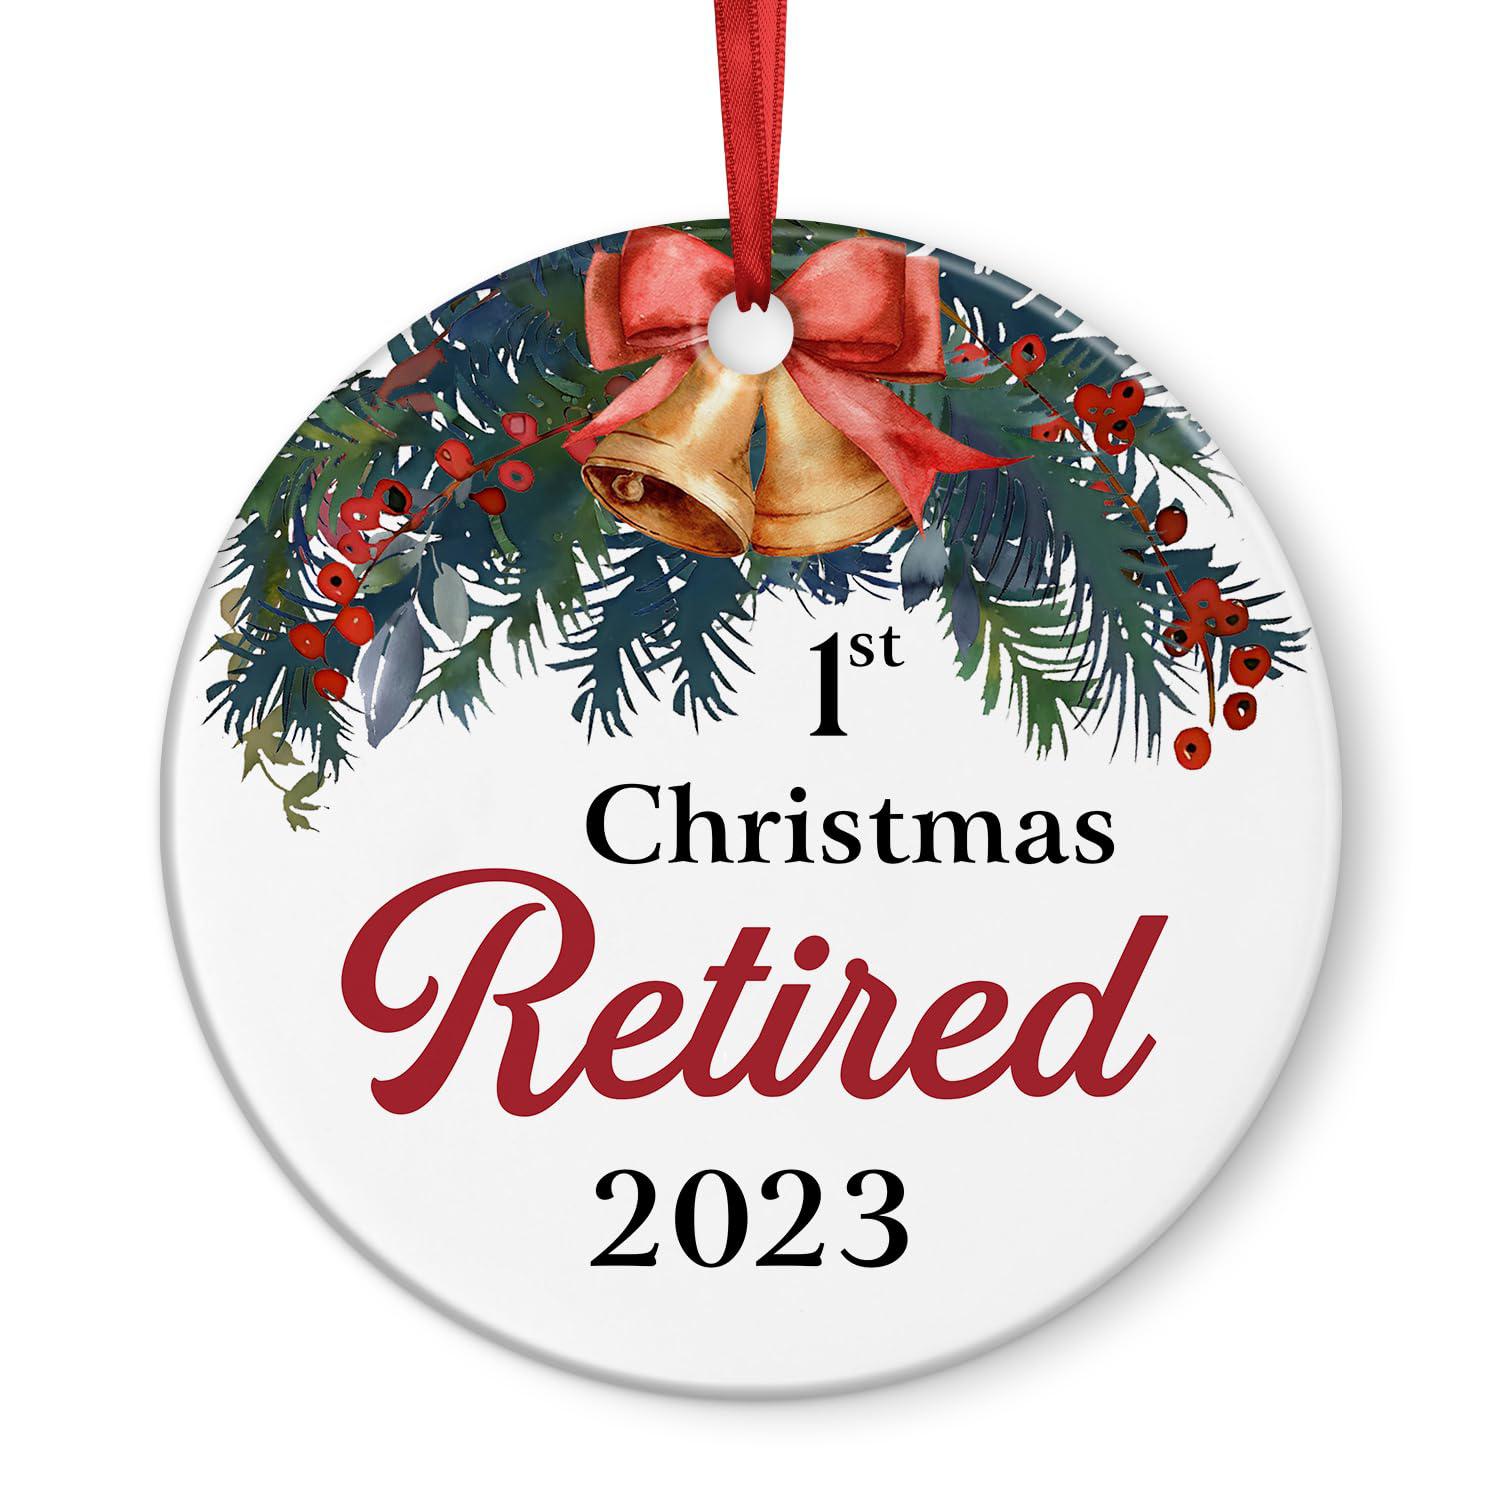 KYRAKO retirement ornament 2023 - best retirement gifts for women, men christmas ornament 2023 - retired gifts for women, men orname